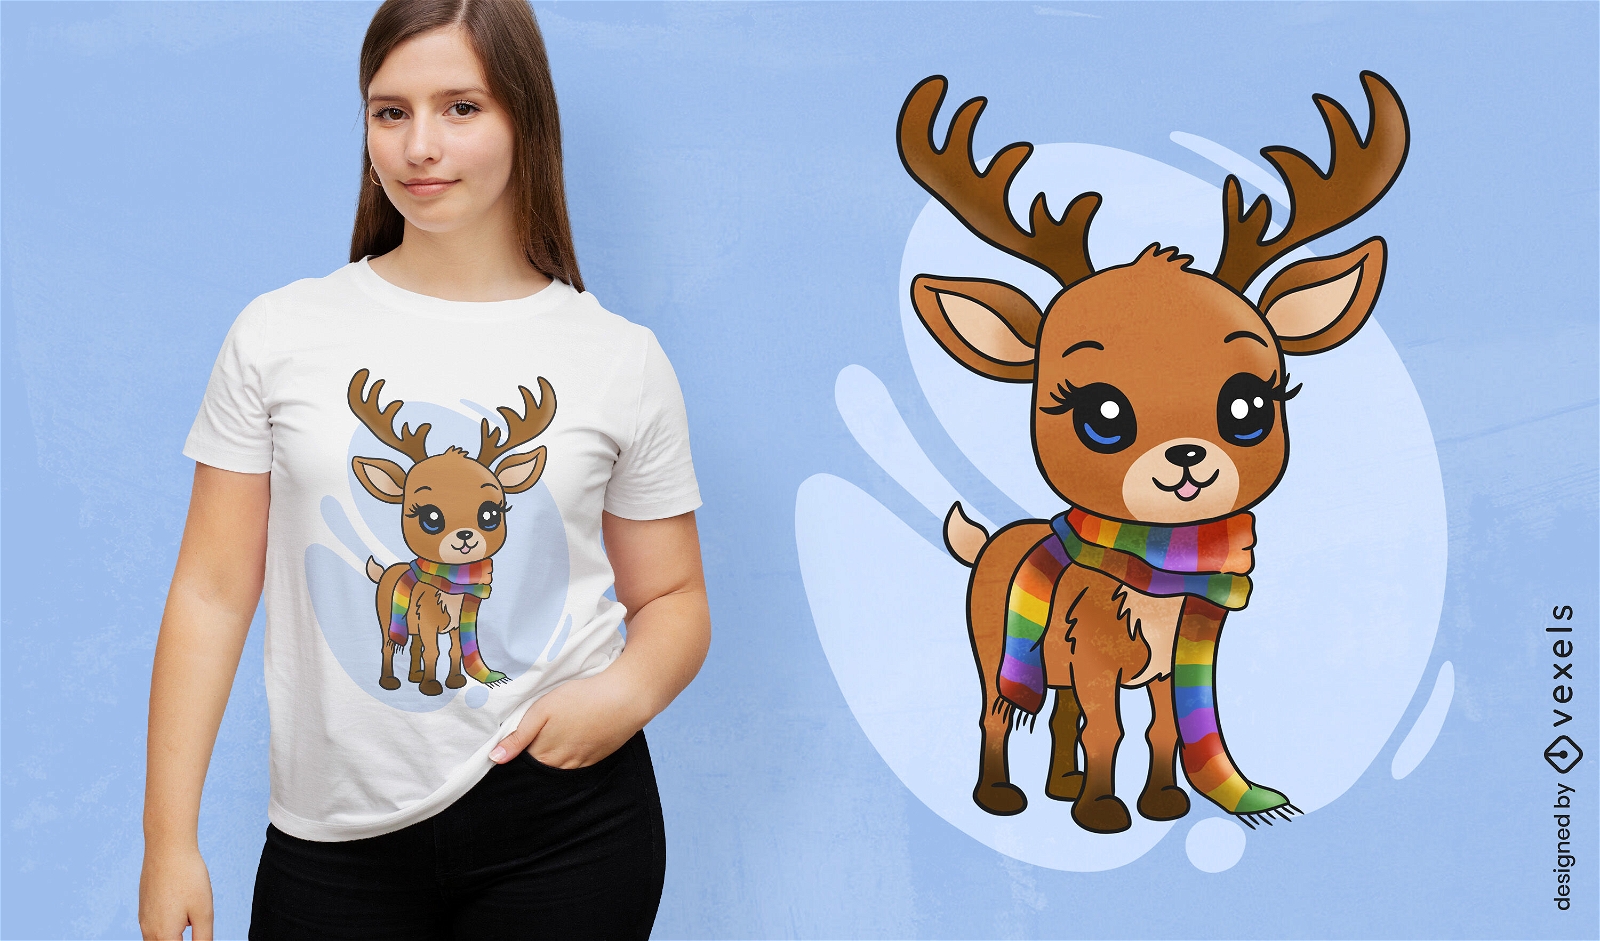 Cute reindeer scarf t-shirt design